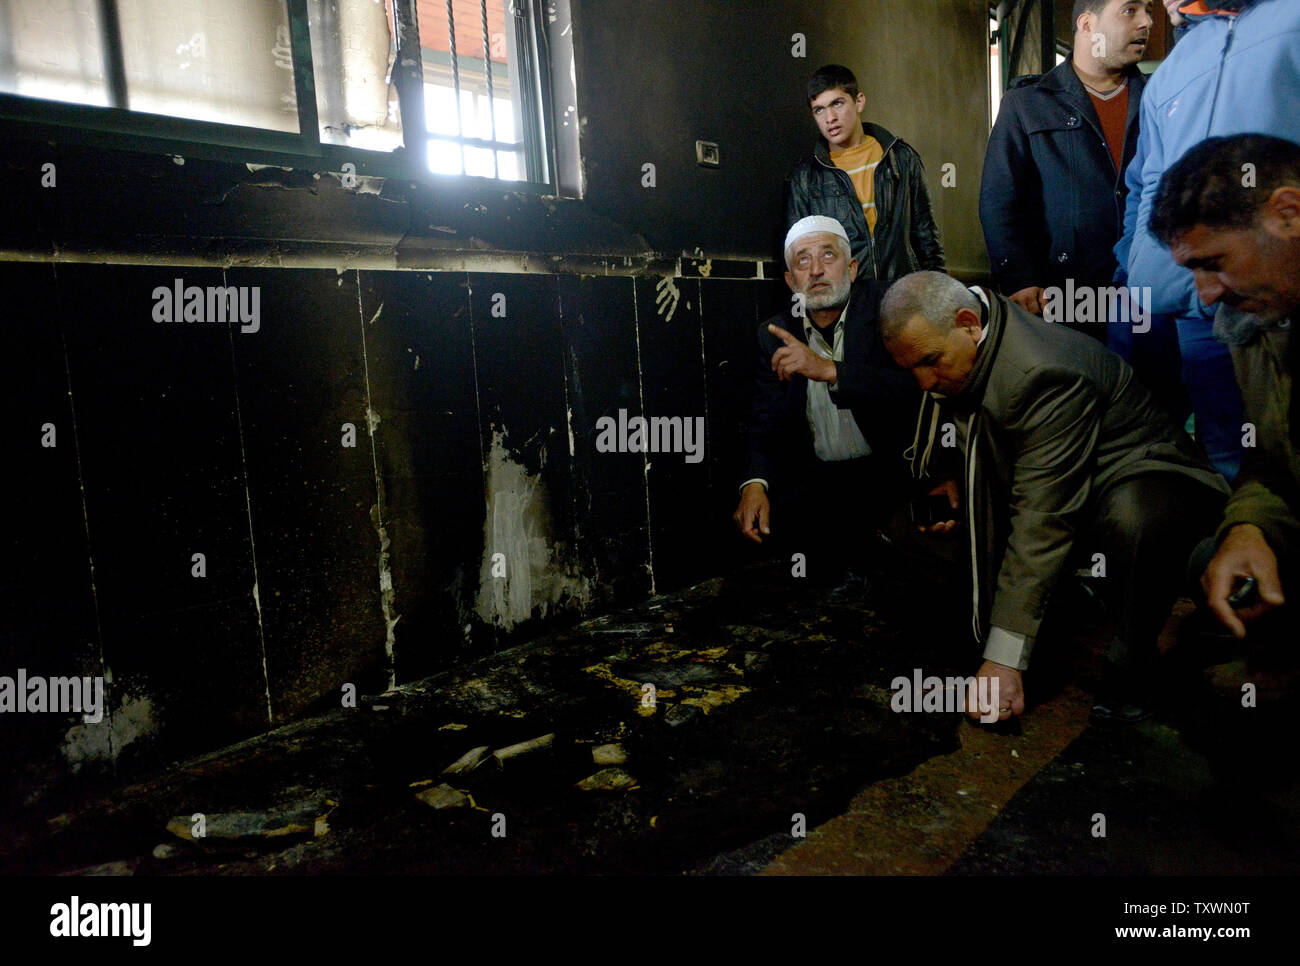 Palestiniens inspecter les dommages à l'intérieur d'une mosquée qui a été incendié et aspergés de graffitis dans un 'tag' prix attaque la haine par des colons juifs extrémistes à Al Jaba'ah, près de Bethléem, en Cisjordanie, le 25 février 2015. Les résidents palestiniens disent qu'ils ont vu des colons israéliens près de la mosquée lorsqu'il a été attaqué tôt mercredi matin. Une étoile de David et 'Vengeance' et 'Nous voulons que la rédemption de Sion" ont été peints à l'extérieur de la mosquée. Photo par Debbie Hill/UPI Banque D'Images